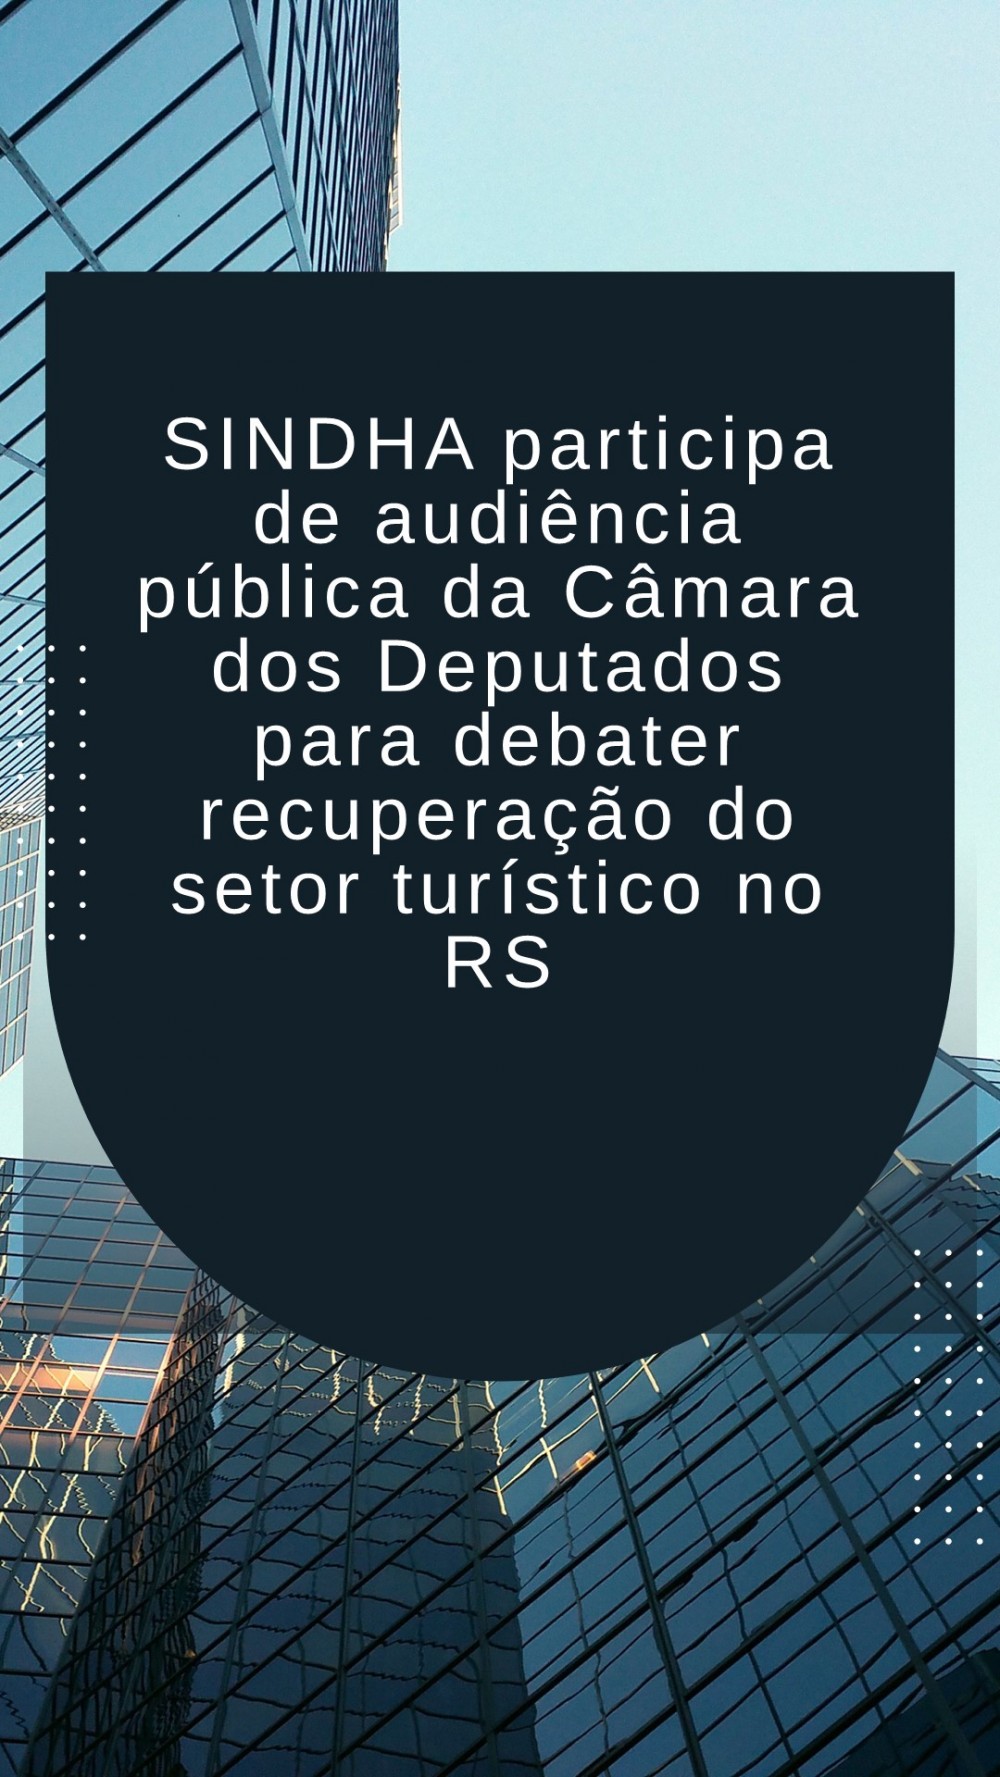 SINDHA participa de audiência pública da Câmara dos Deputados para debater recuperação do setor turístico no RS